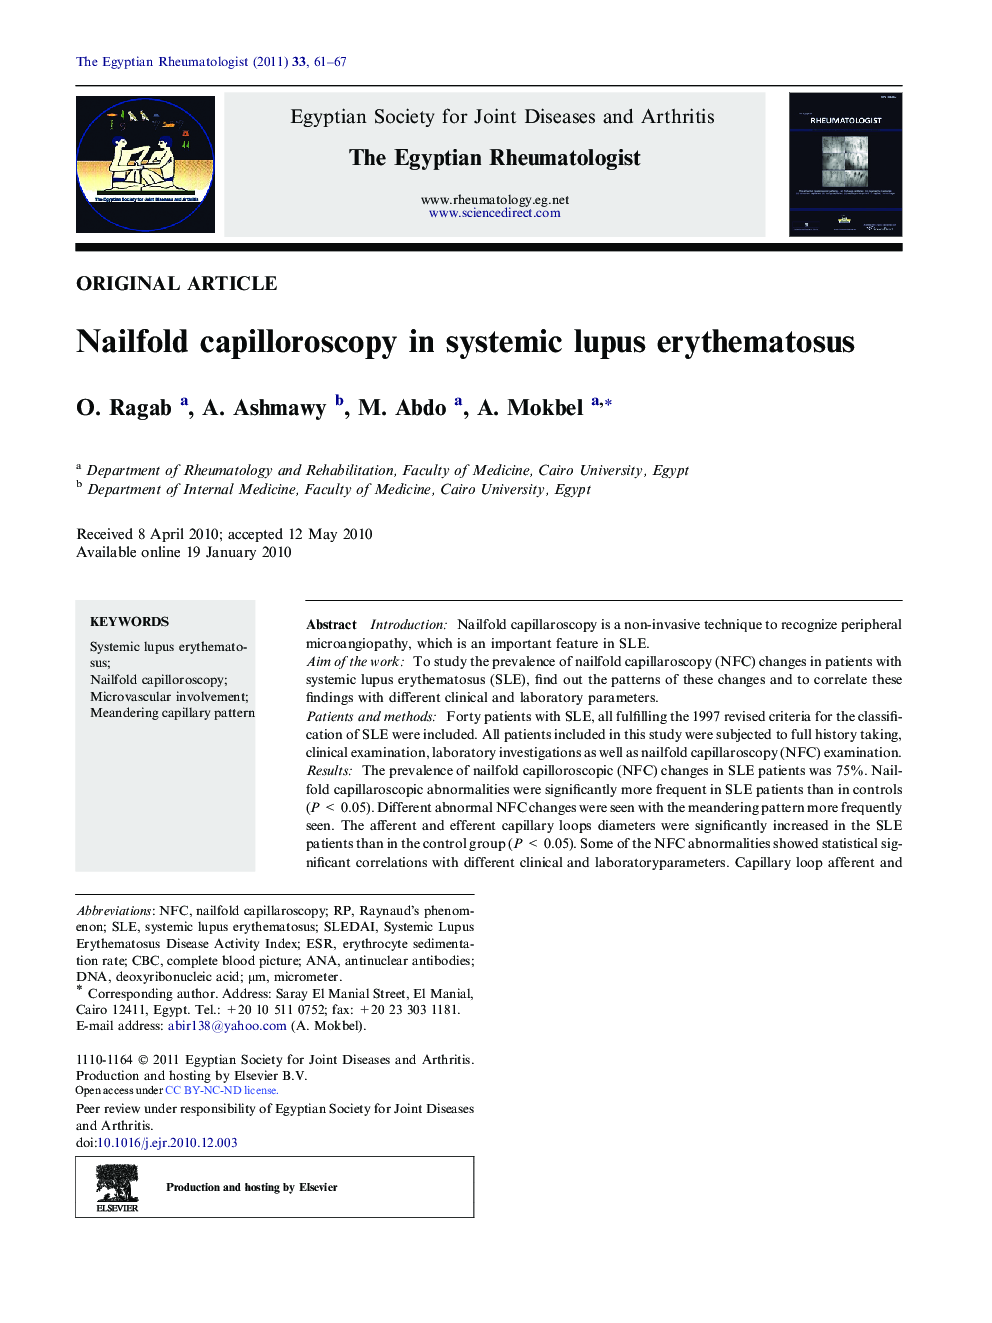 Nailfold capilloroscopy in systemic lupus erythematosus 